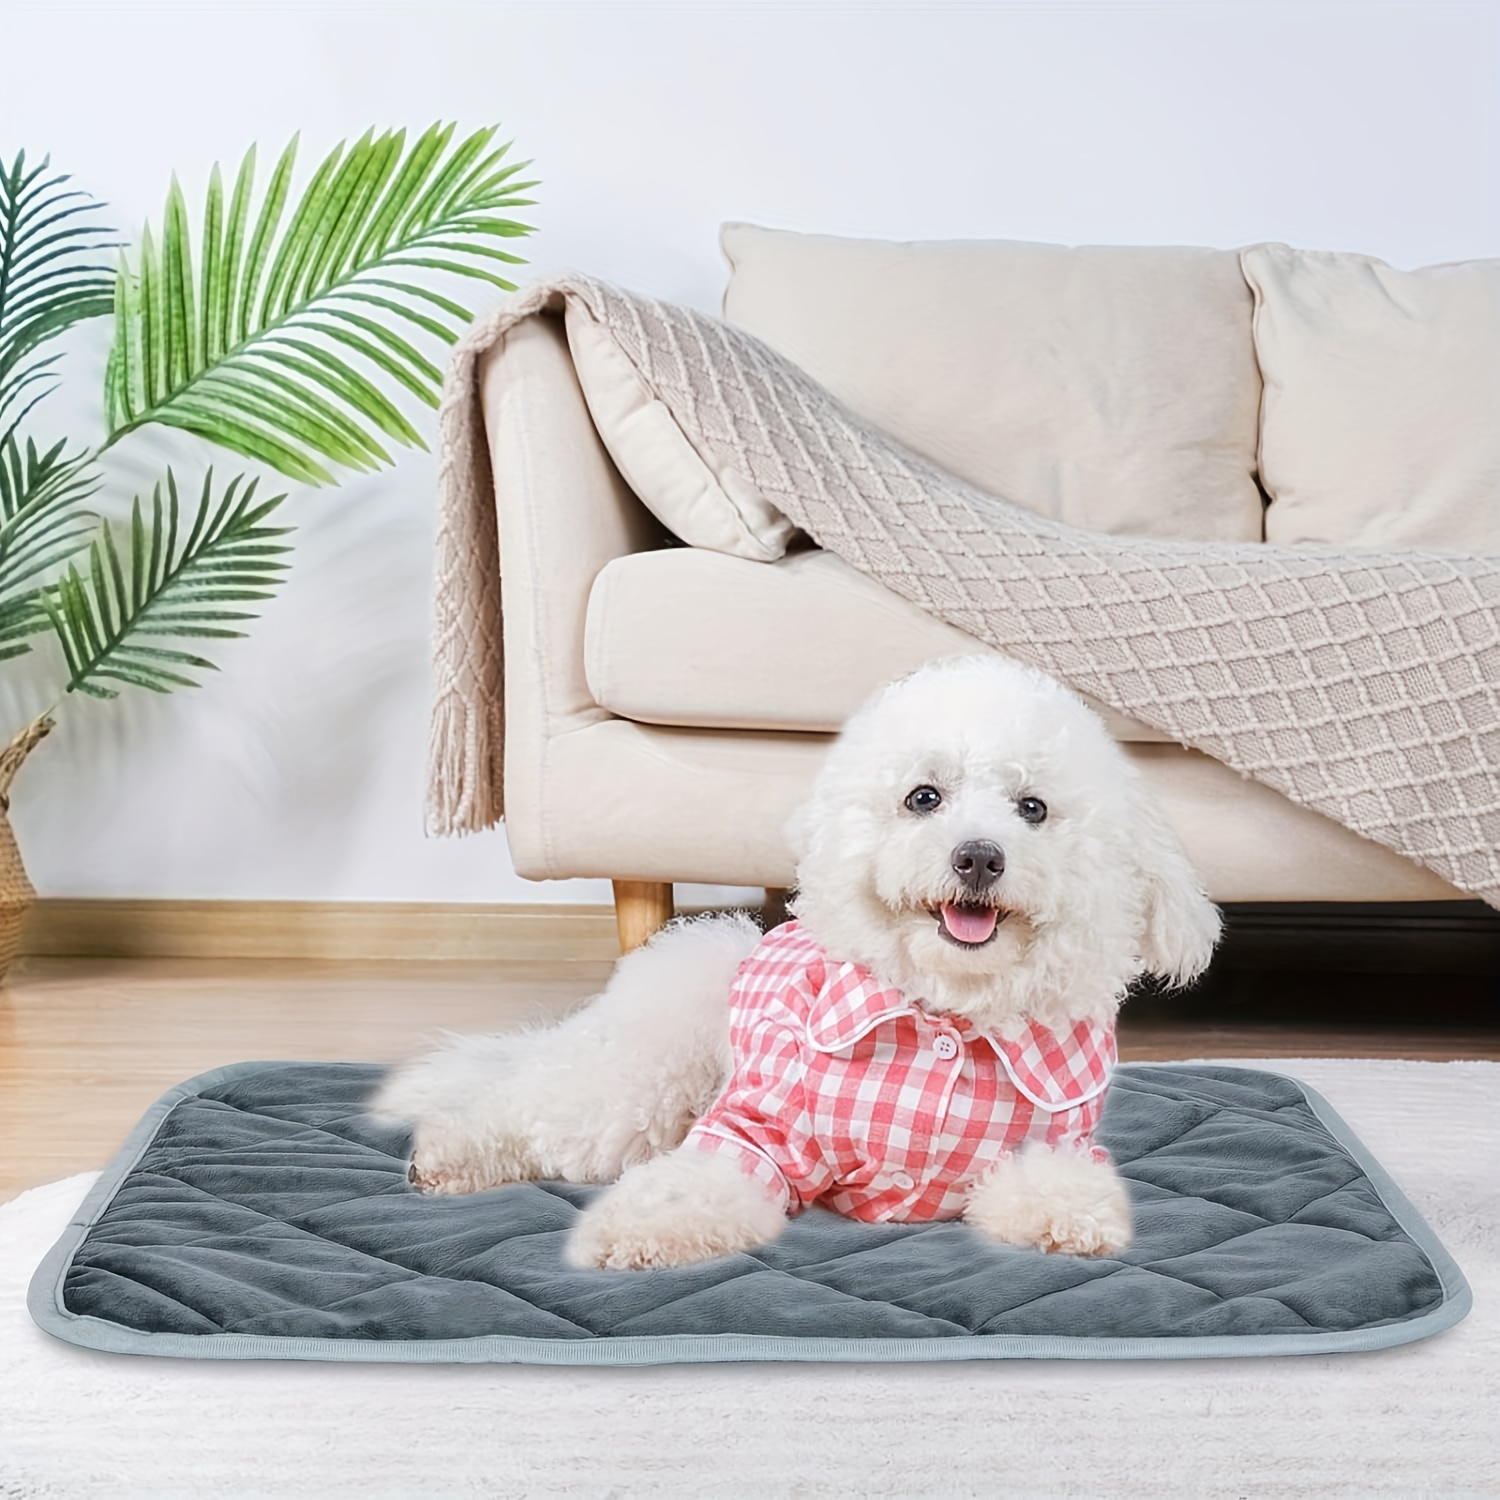 Зимний теплый самонагревающийся коврик для собаки, согревающий коврик для домашних животных, кровать для собаки, одеяло для домашних животных, согревающий коврик для собак